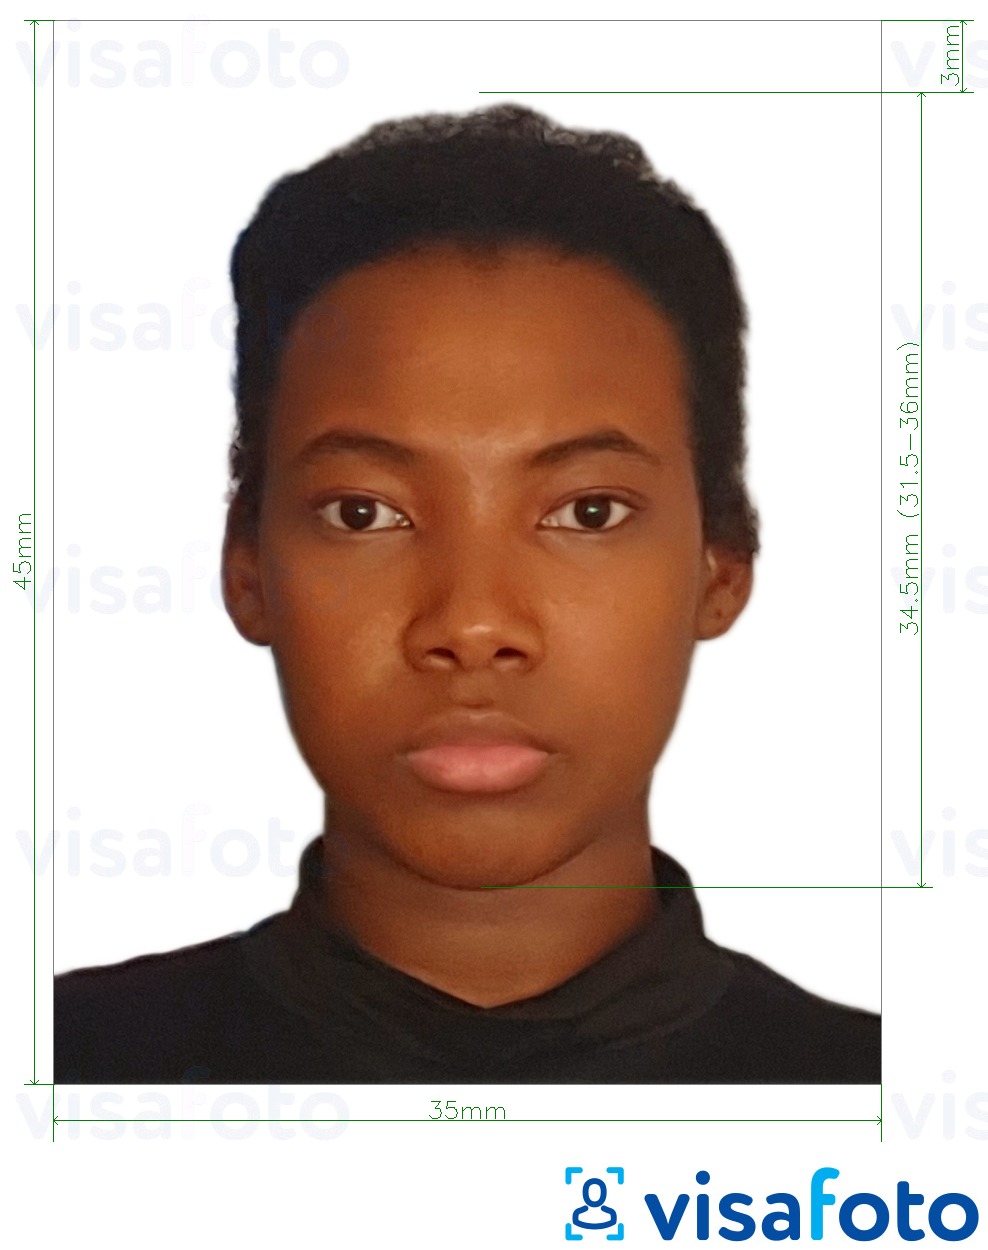 نمونه ی یک عکس برای گذرنامه مالاوی 4.5x3.5 سانتی متر (45x35 میلی متر) با مشخصات دقیق